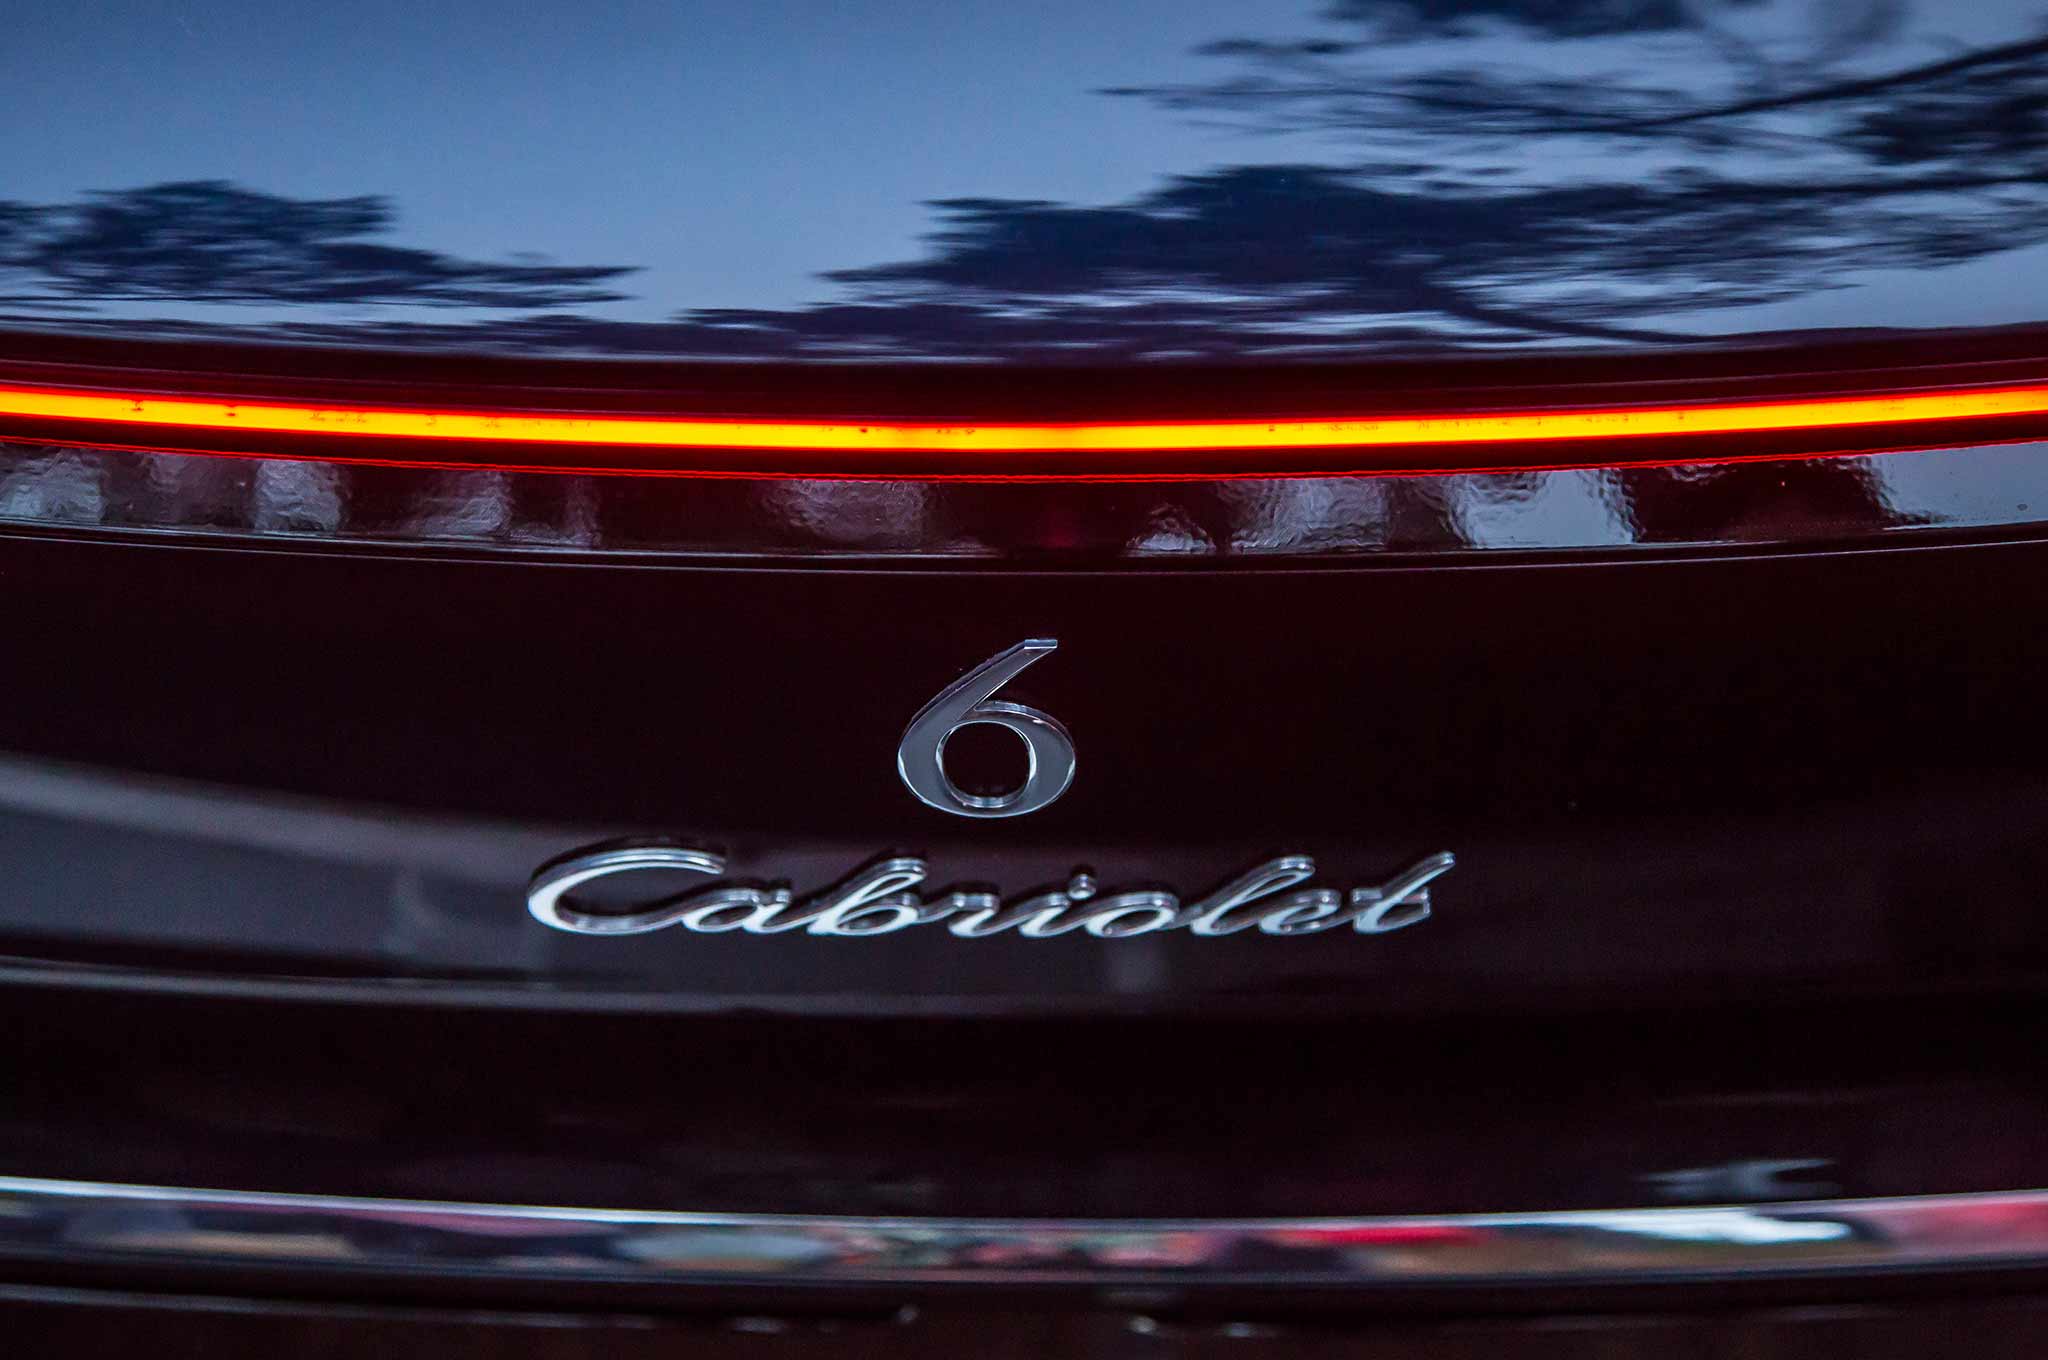 Chiêm ngưỡng vẻ đẹp xuất sắc của Vision Mercedes-Maybach 6 Cabriolet ngoài đời thực - Ảnh 15.